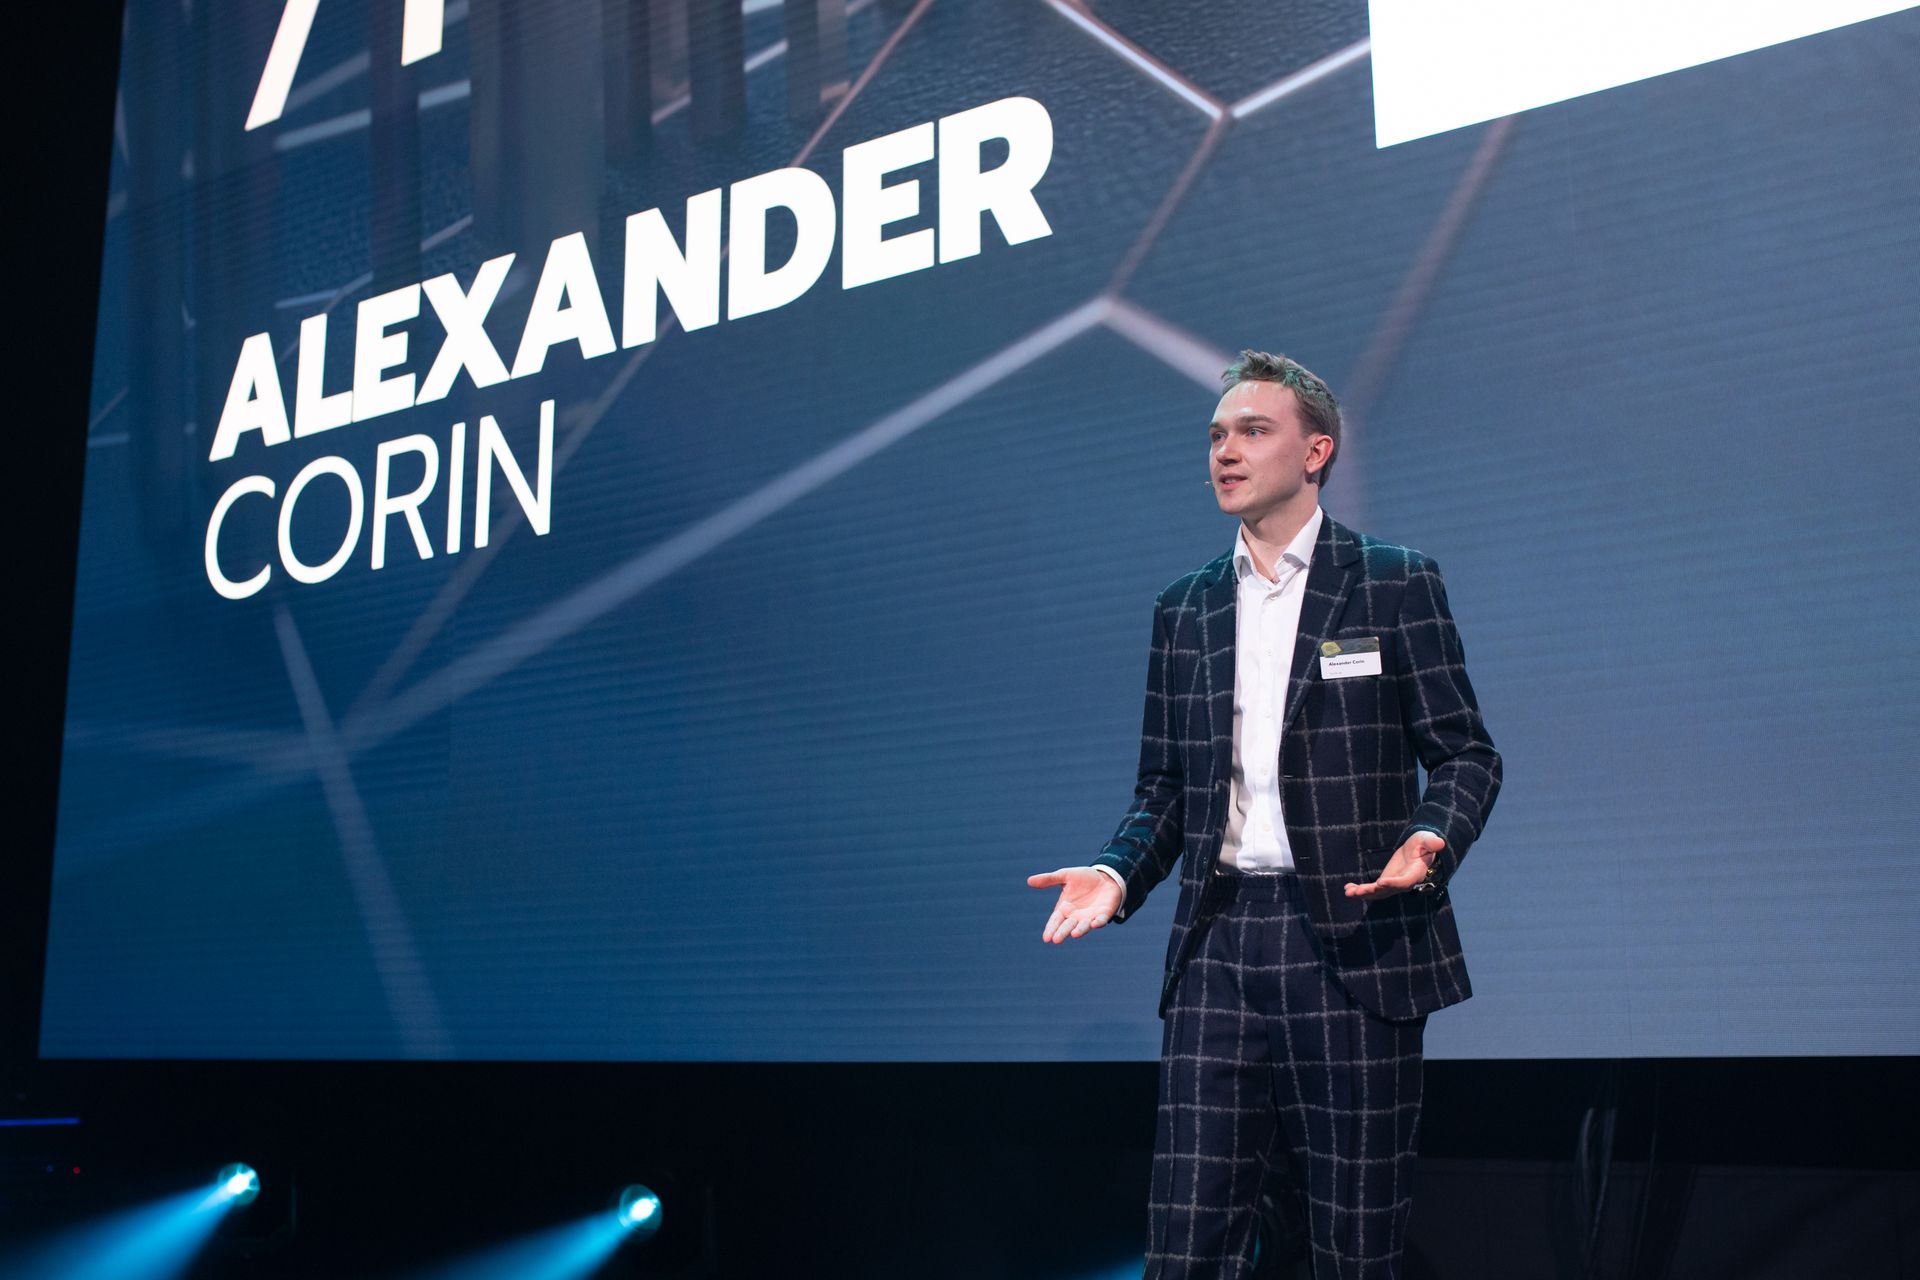 Alexander Corin, vencedor da classificação "Nextgen Hero", na cerimónia de entrega do "Digital Economy Award" da Suíça